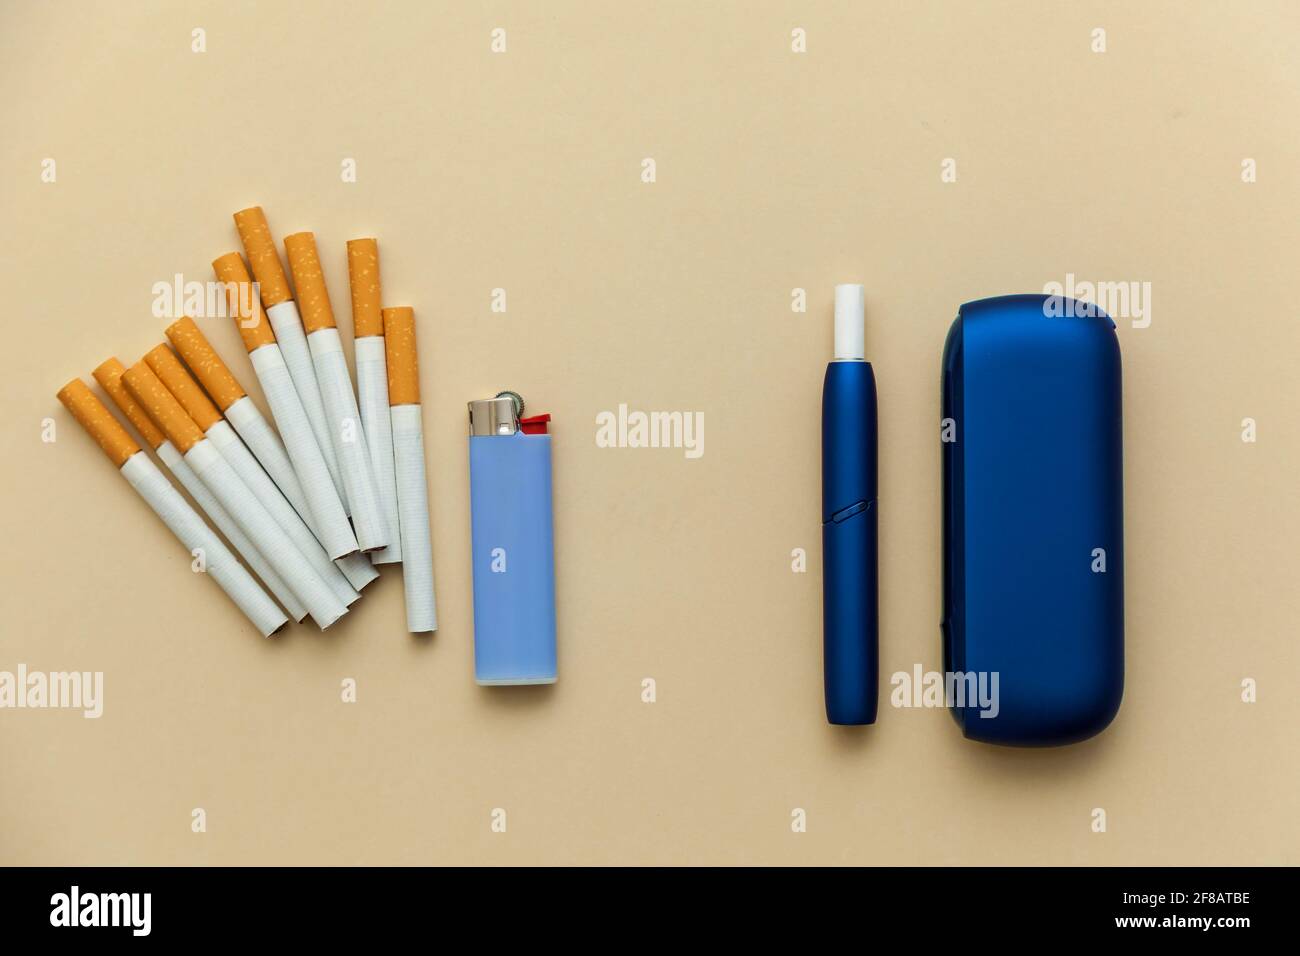 Elektronische blaue IQOS-Zigarette, gewöhnliche Zigaretten mit einem  Feuerzeug auf einem beigen Hintergrund. Foto mit Platz für Text, Logo und  Design. Konzept Hea Stockfotografie - Alamy